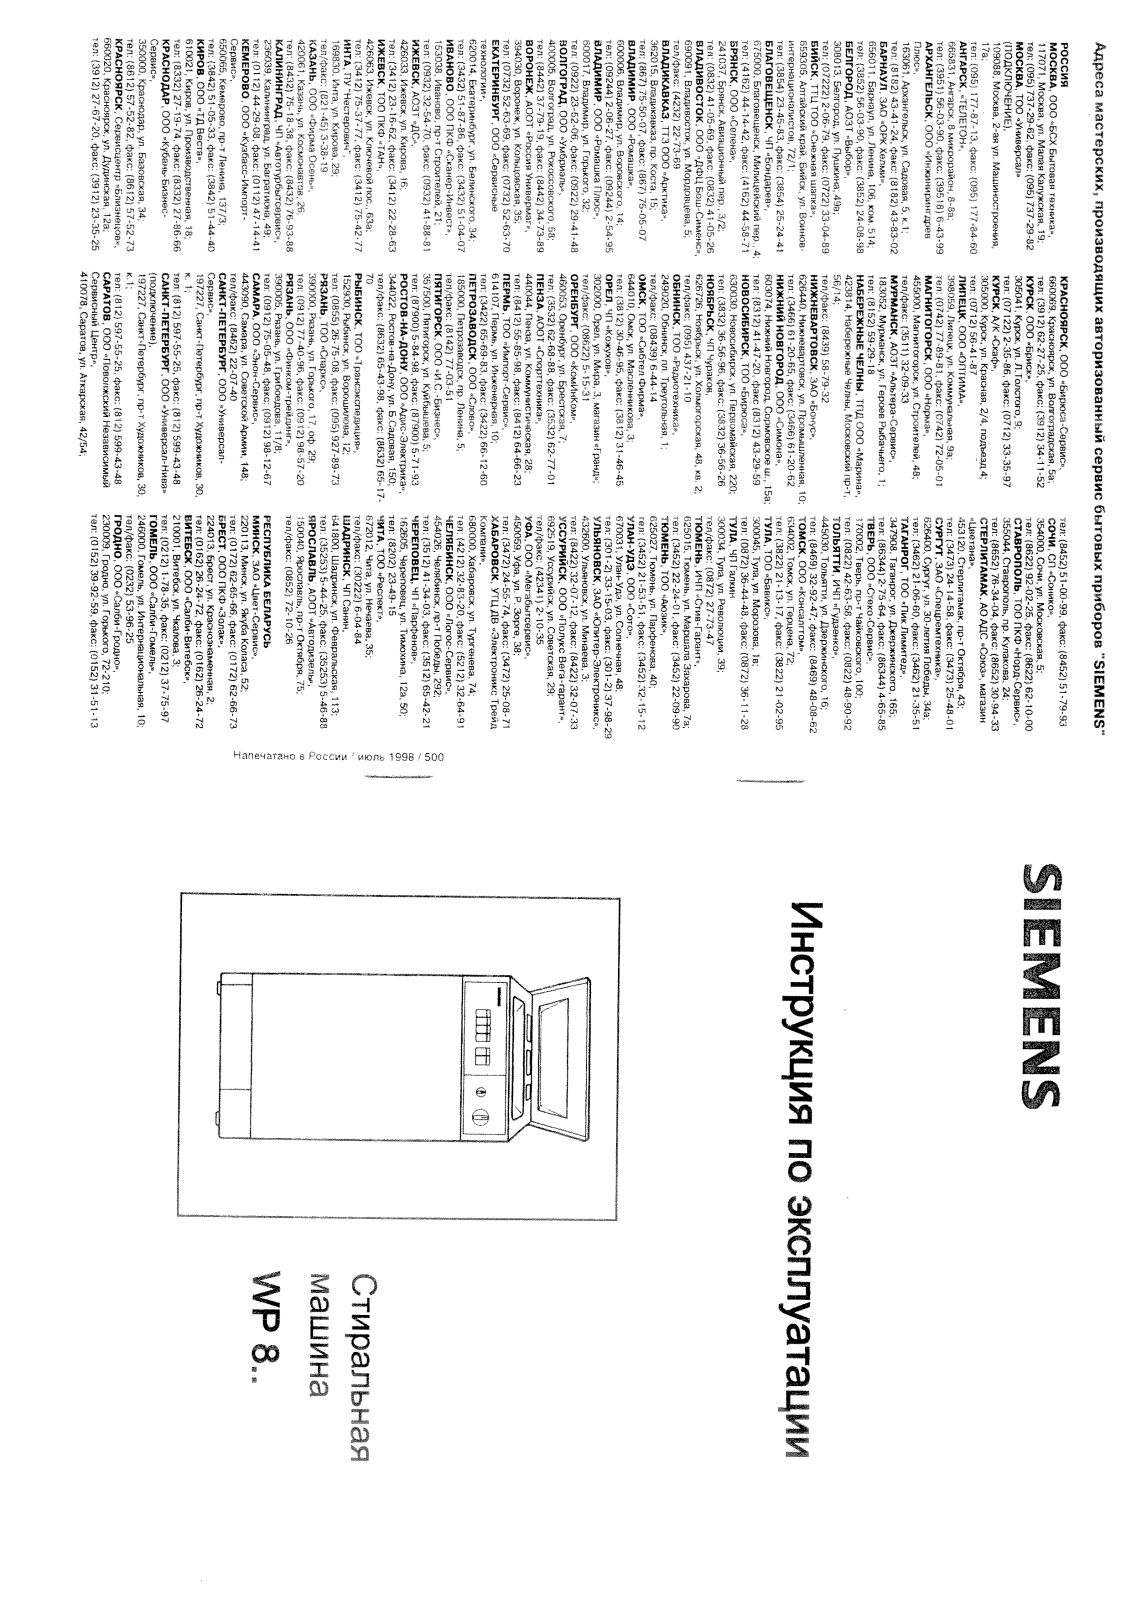 Siemens Siwamat 8080, Siwamat 8090, Siwamat 8100, WP 8100, WP 80900 User Manual